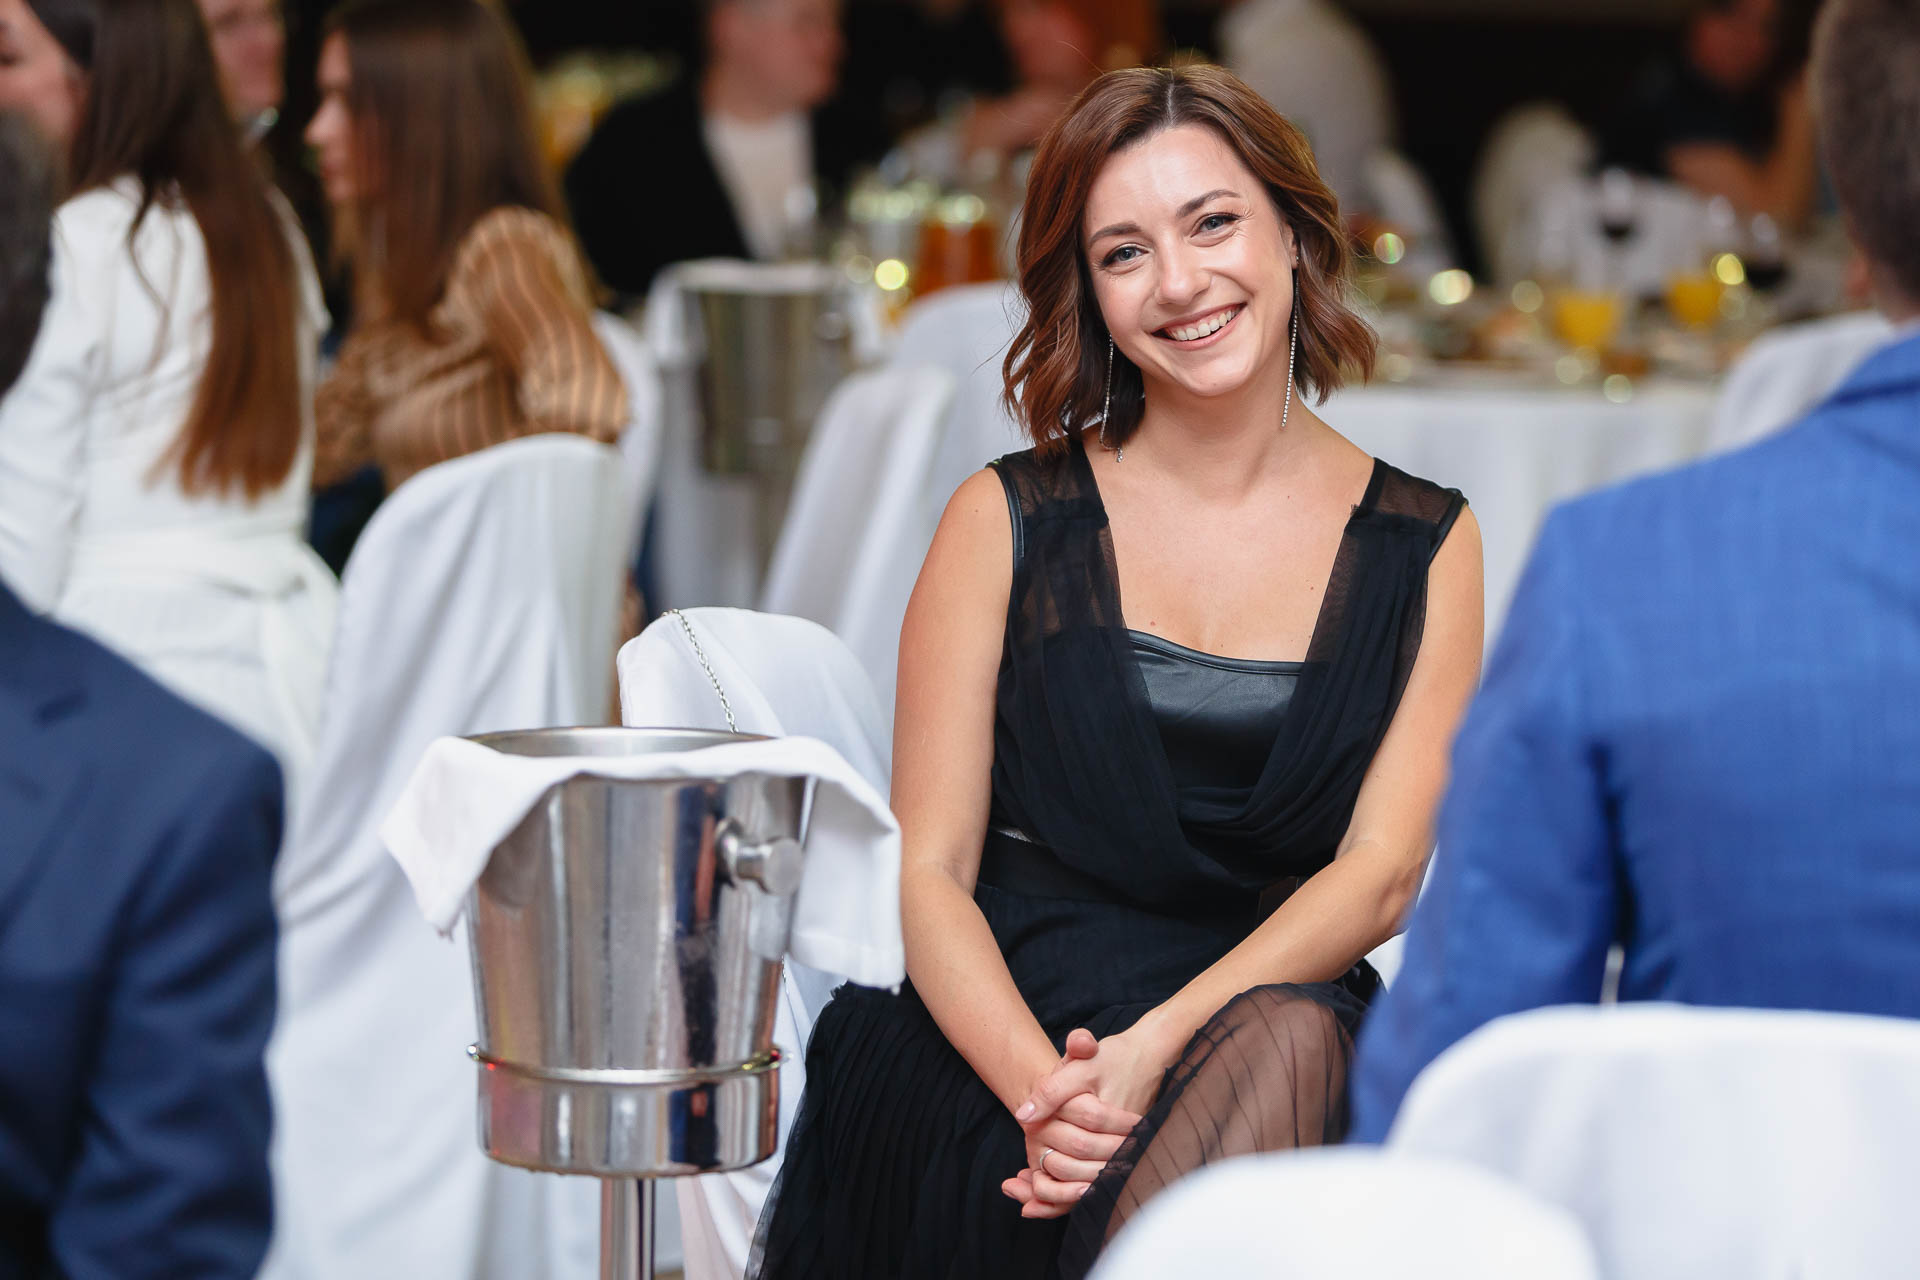 женщина улыбается фотографу на корпоративном мероприятии на фоне столов и гостей